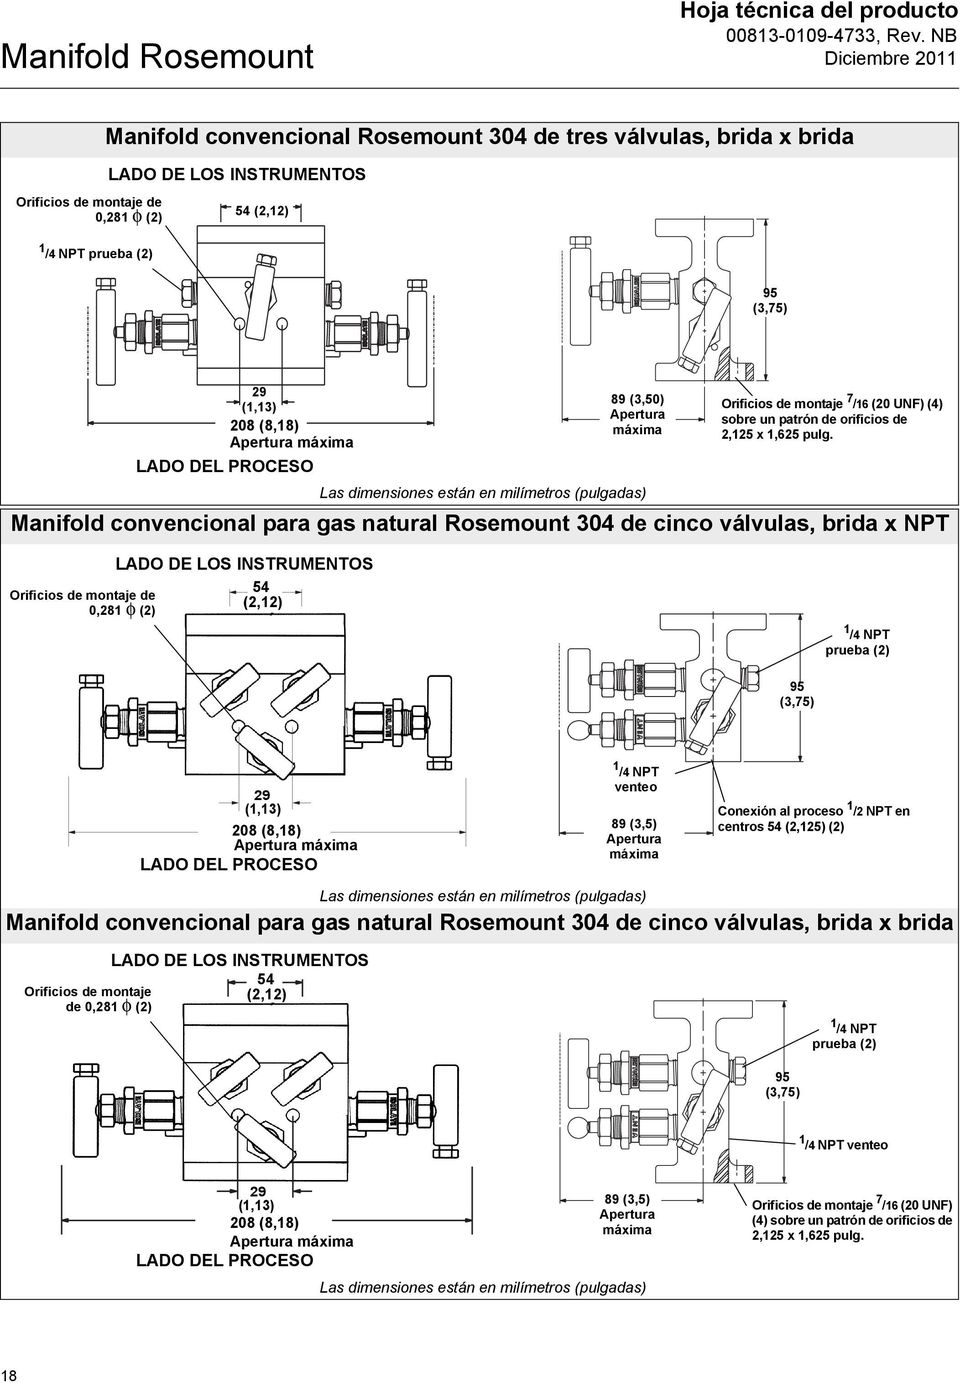 Manifold convencional para gas natural Rosemount 304 de cinco válvulas, brida x NPT Orificios de montaje de 0,281 φ (2) LADO DE LOS INSTRUMENTOS 54 (2,12) 1 /4 NPT prueba (2) 95 (3,75) 29 (1,13) 208